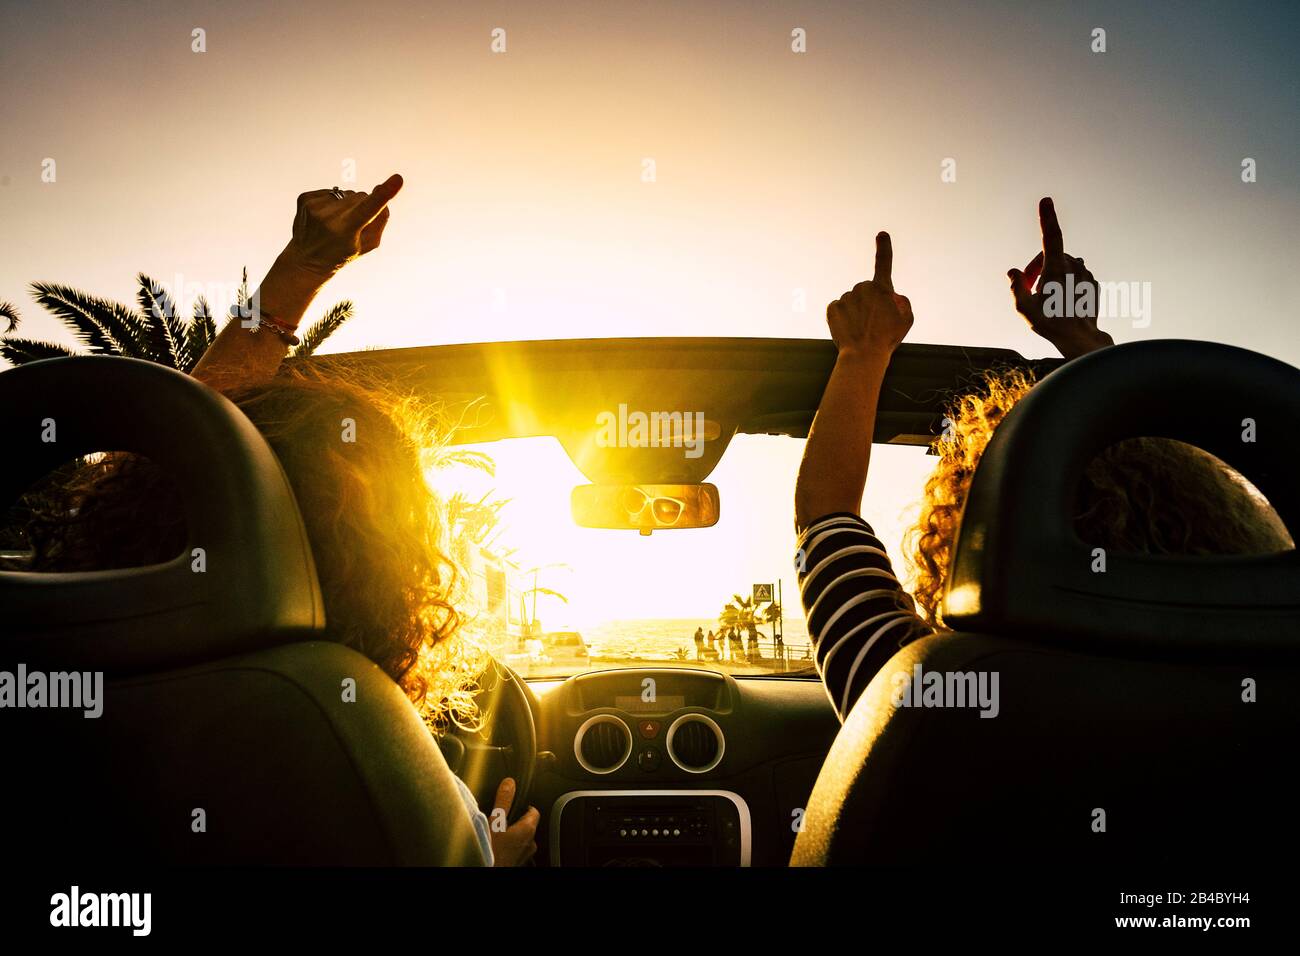 Les gens sont heureux de passer des vacances de voyage avec une voiture convertible donnant les mains et dansant pour les vacances d'été en mer - soleil à l'horizon et concept joyeux pour les femmes amis libres ensemble Banque D'Images